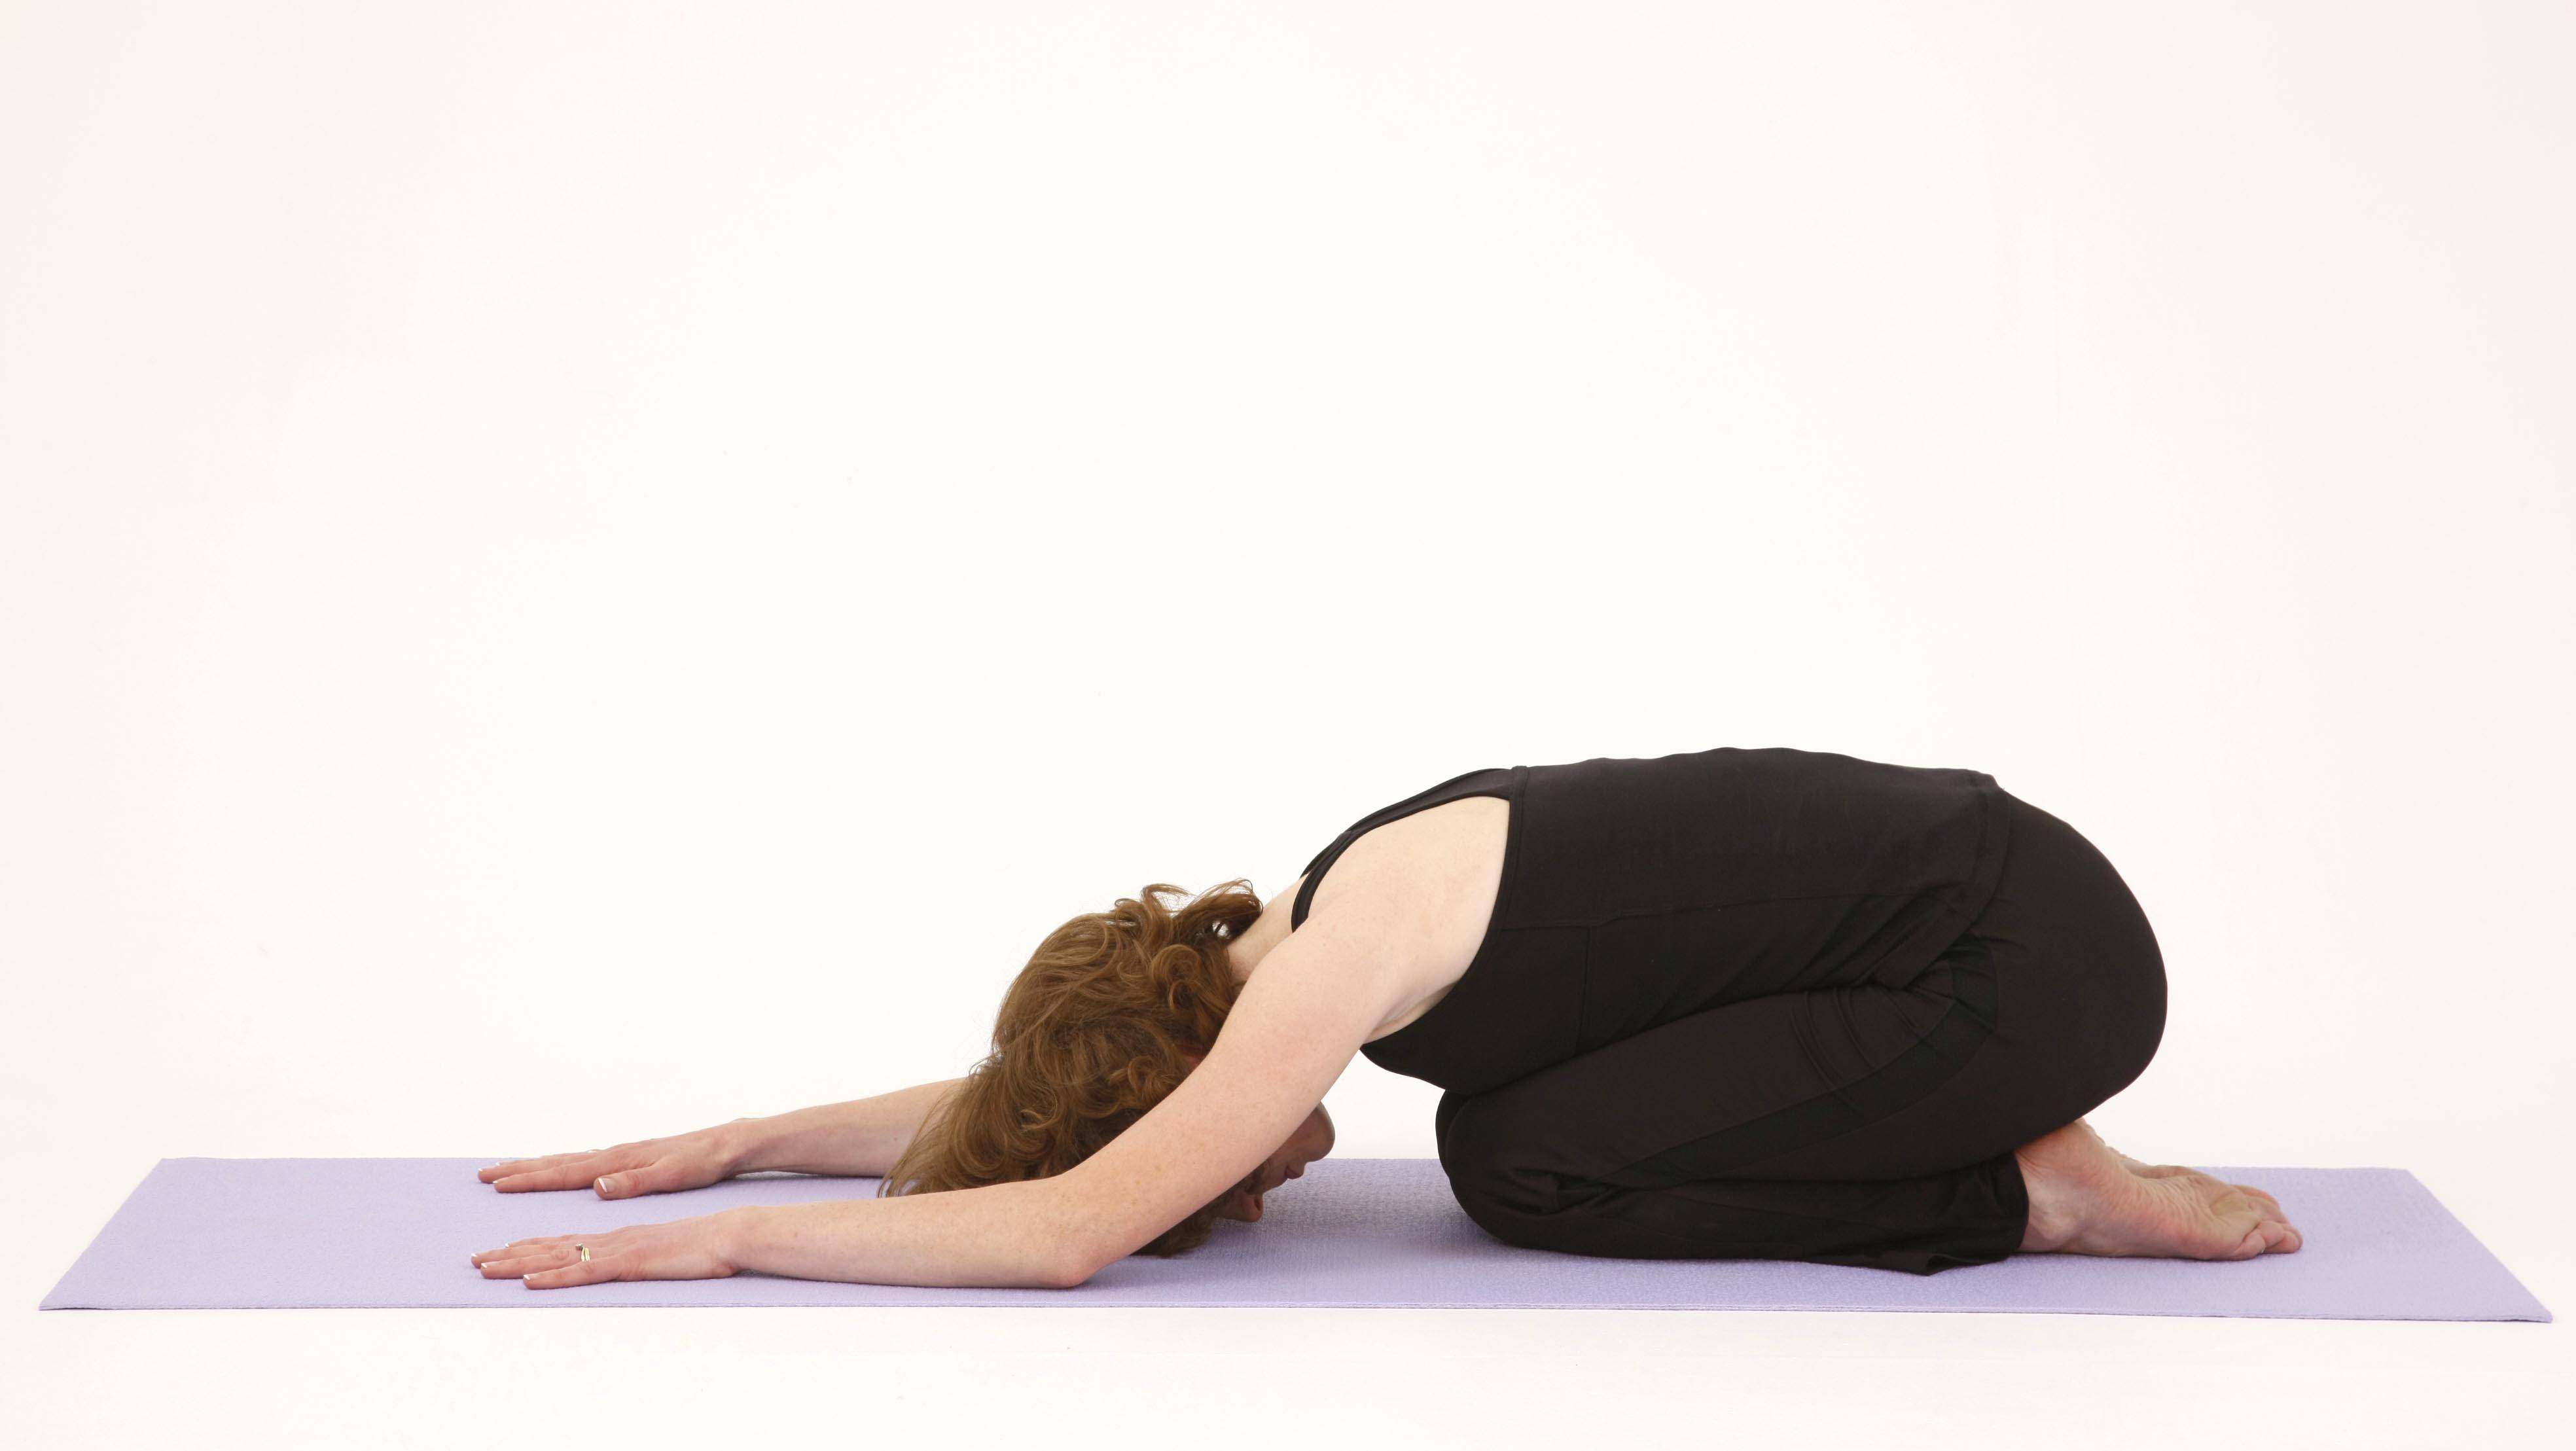 Поза наездника в йоге (ашва санчаласана) - правильная техника выполнения упражнения